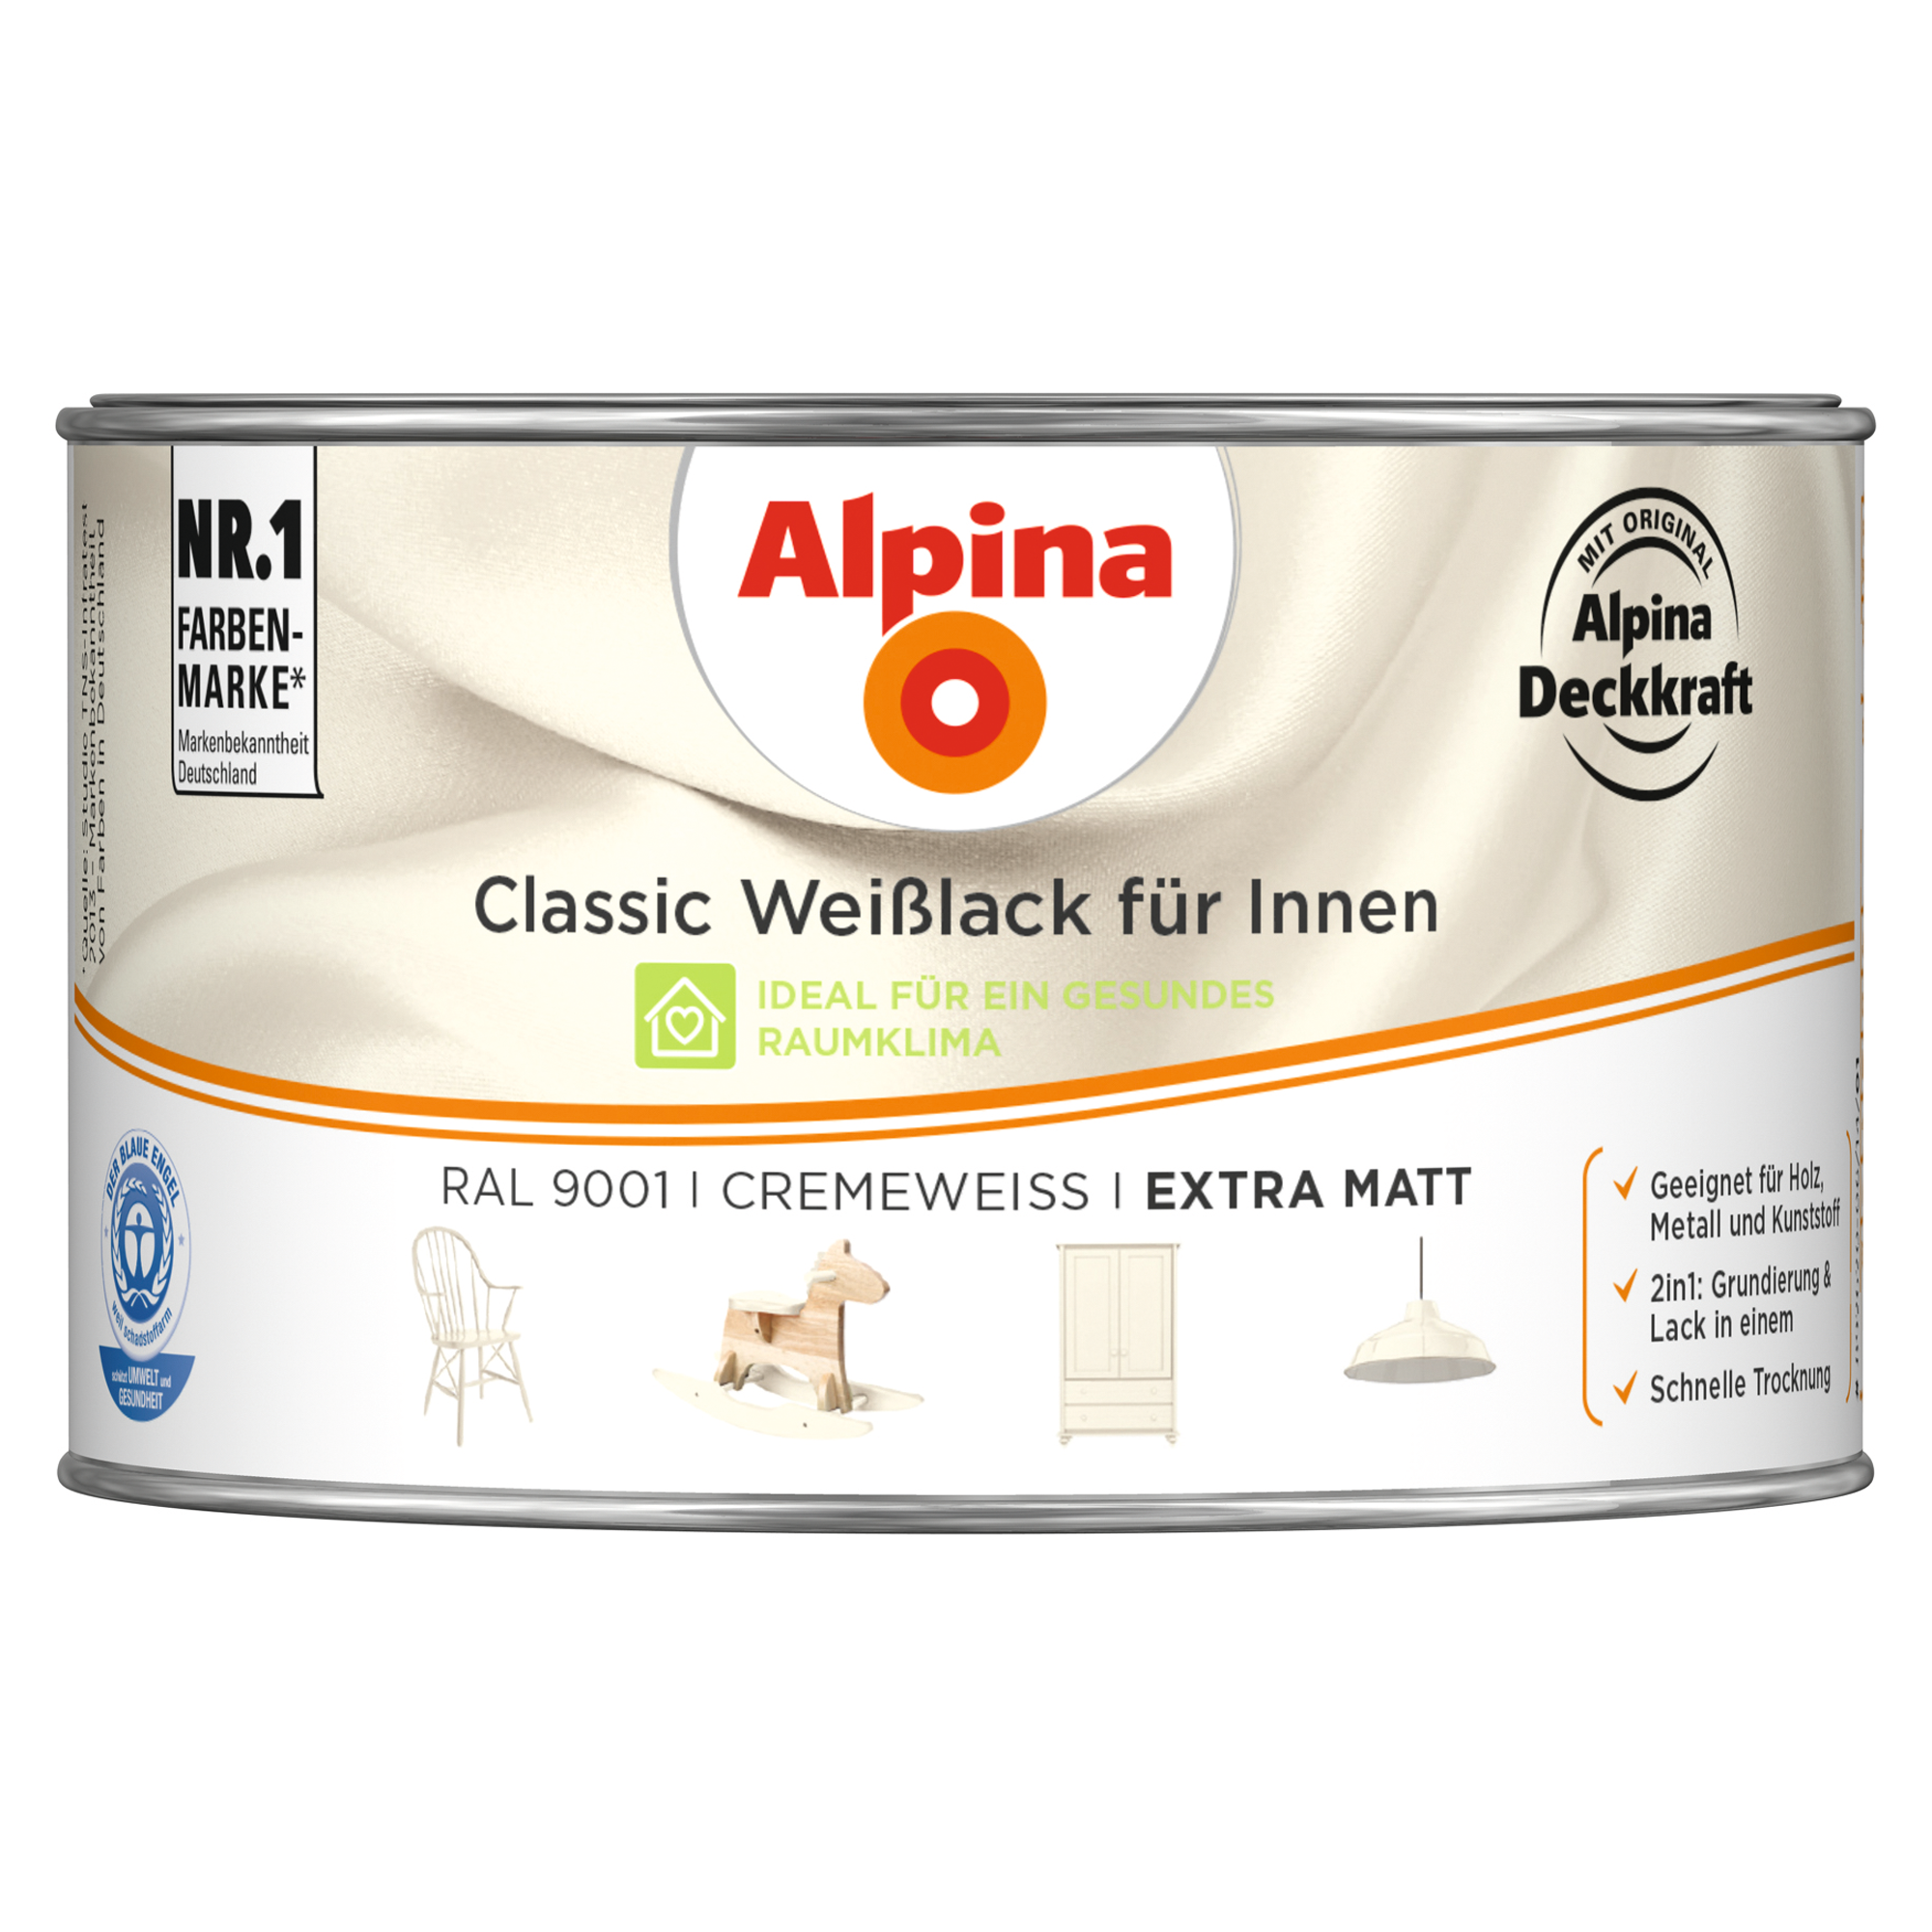 Weißlack für Innen cremeweiß extramatt 300 ml + product picture